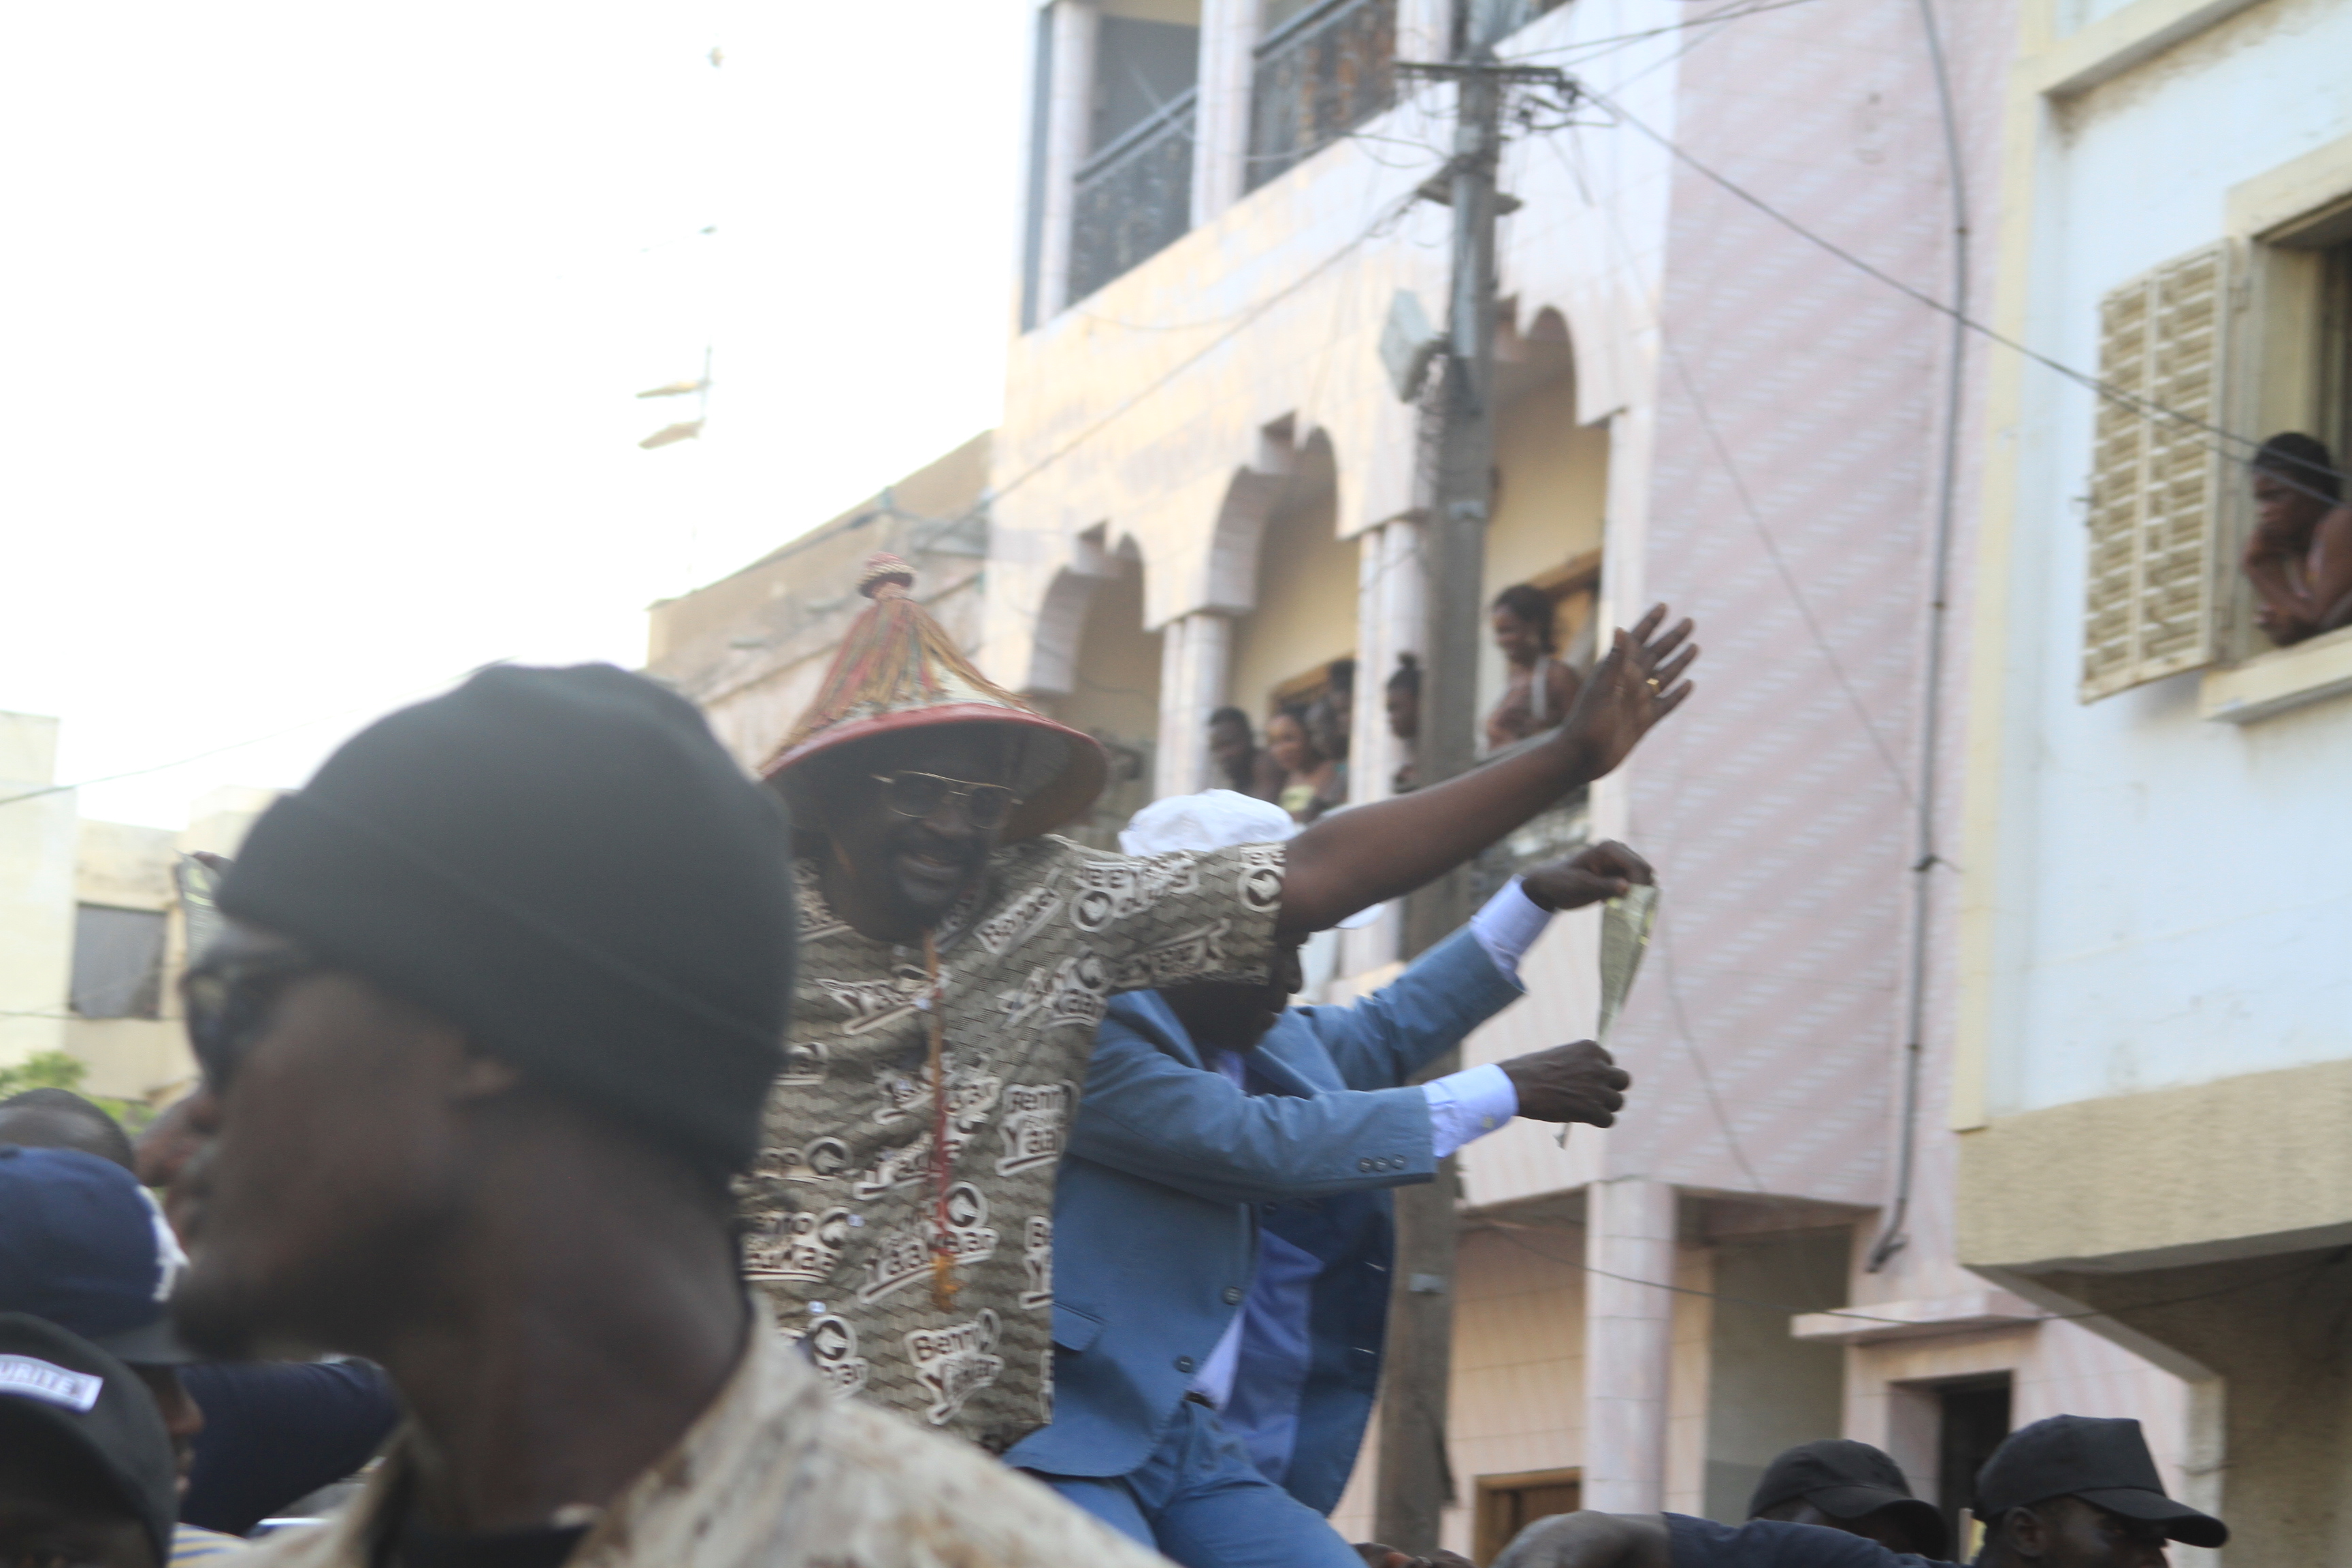 Caravane BBY à la Médina: Pape Abdoulaye Seck mobilise pour le Benno